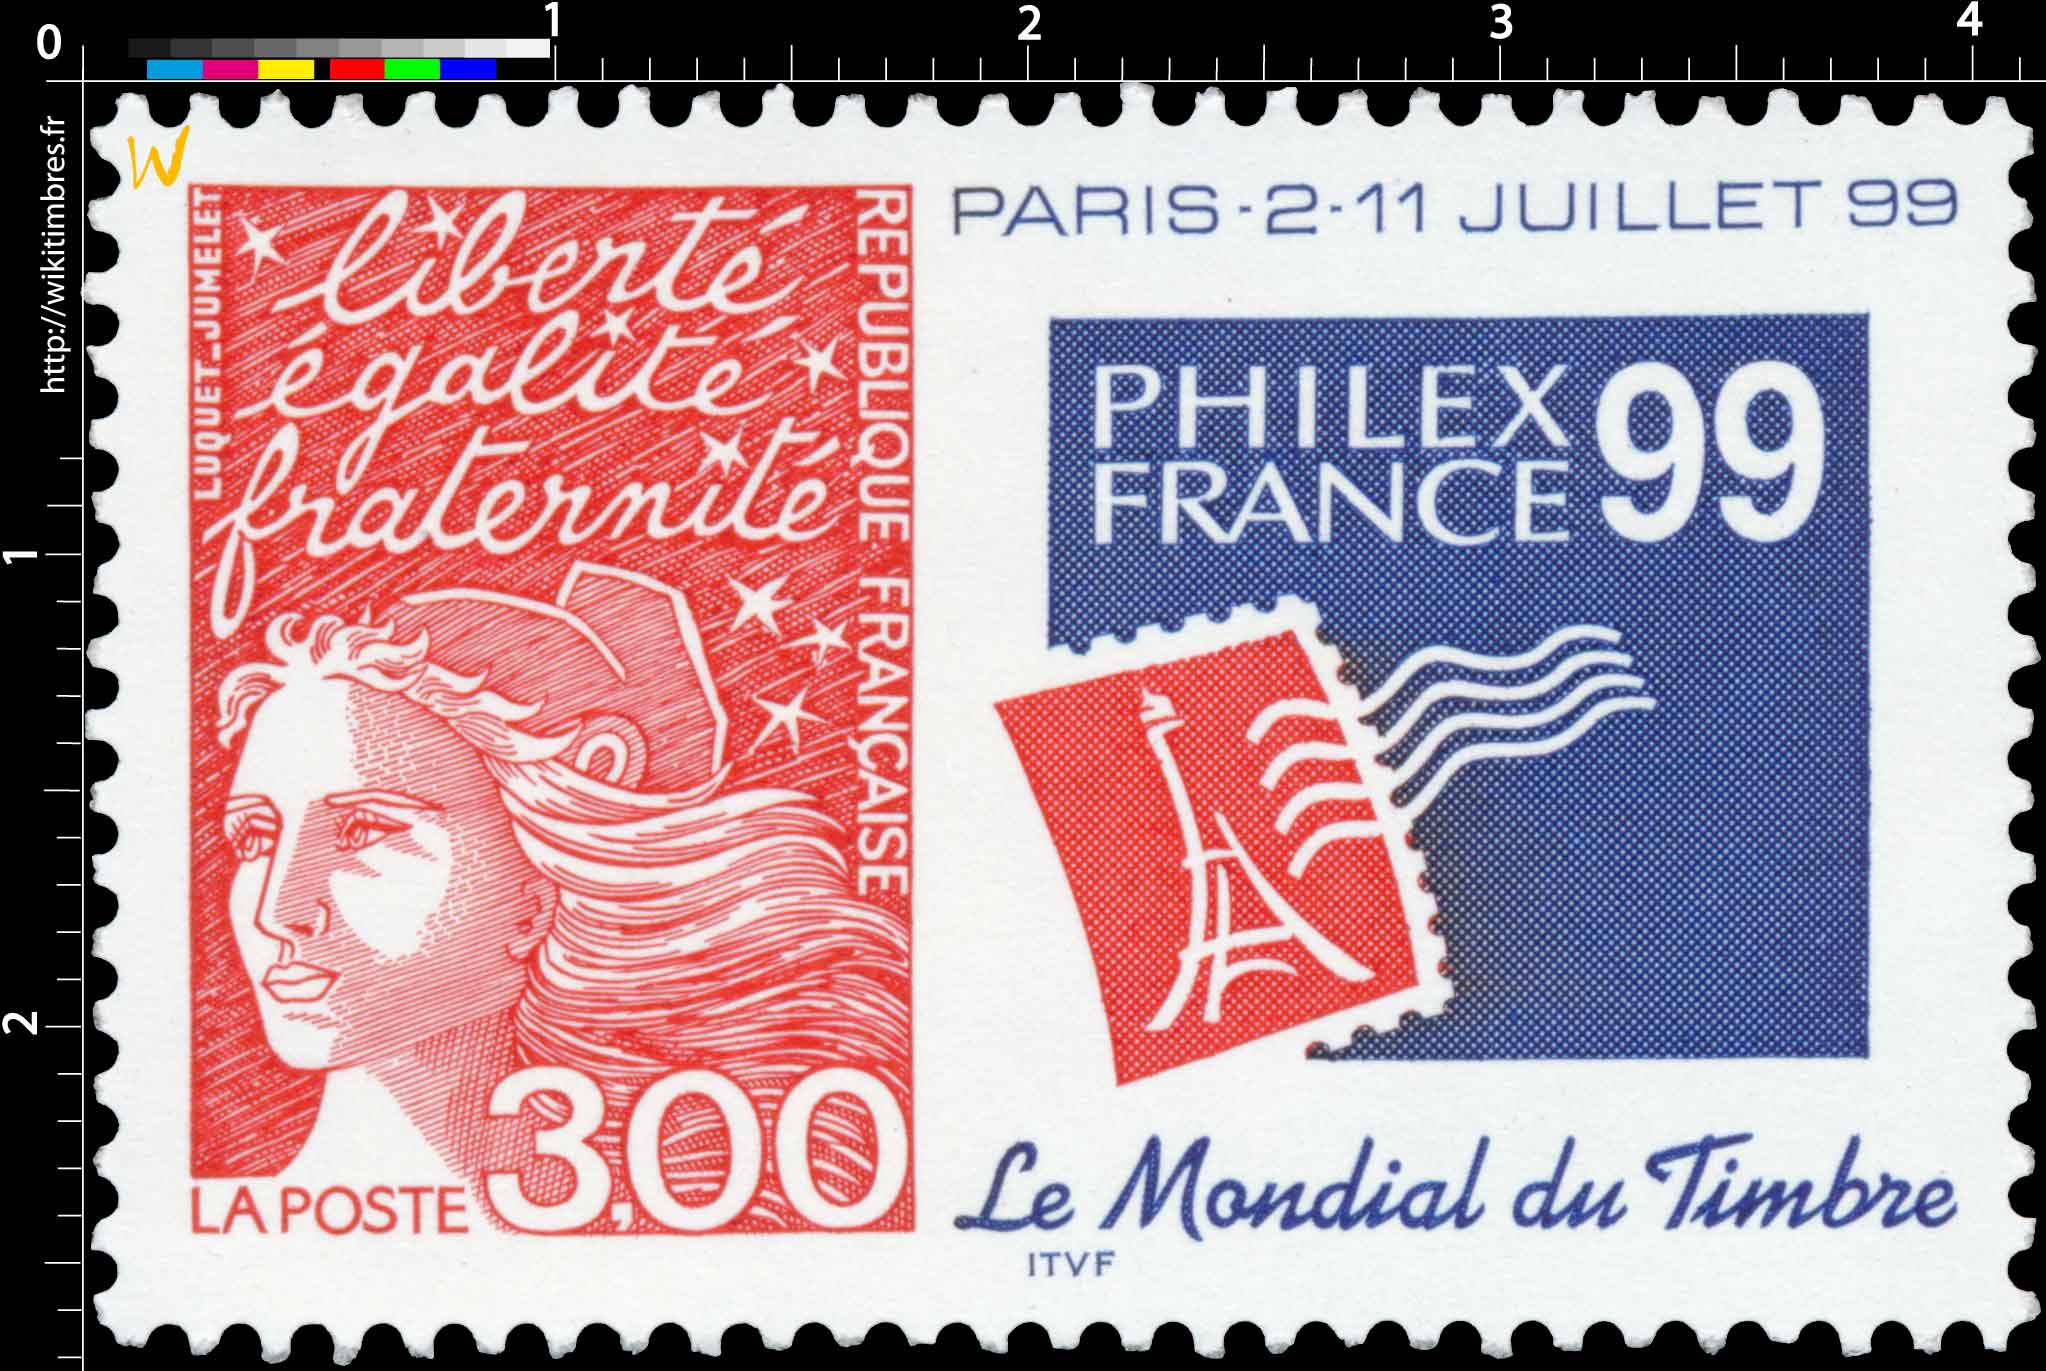 PHILEXFRANCE 99 Le mondial du timbre paris -2-11 juillet 99 liberté égalité fraternité